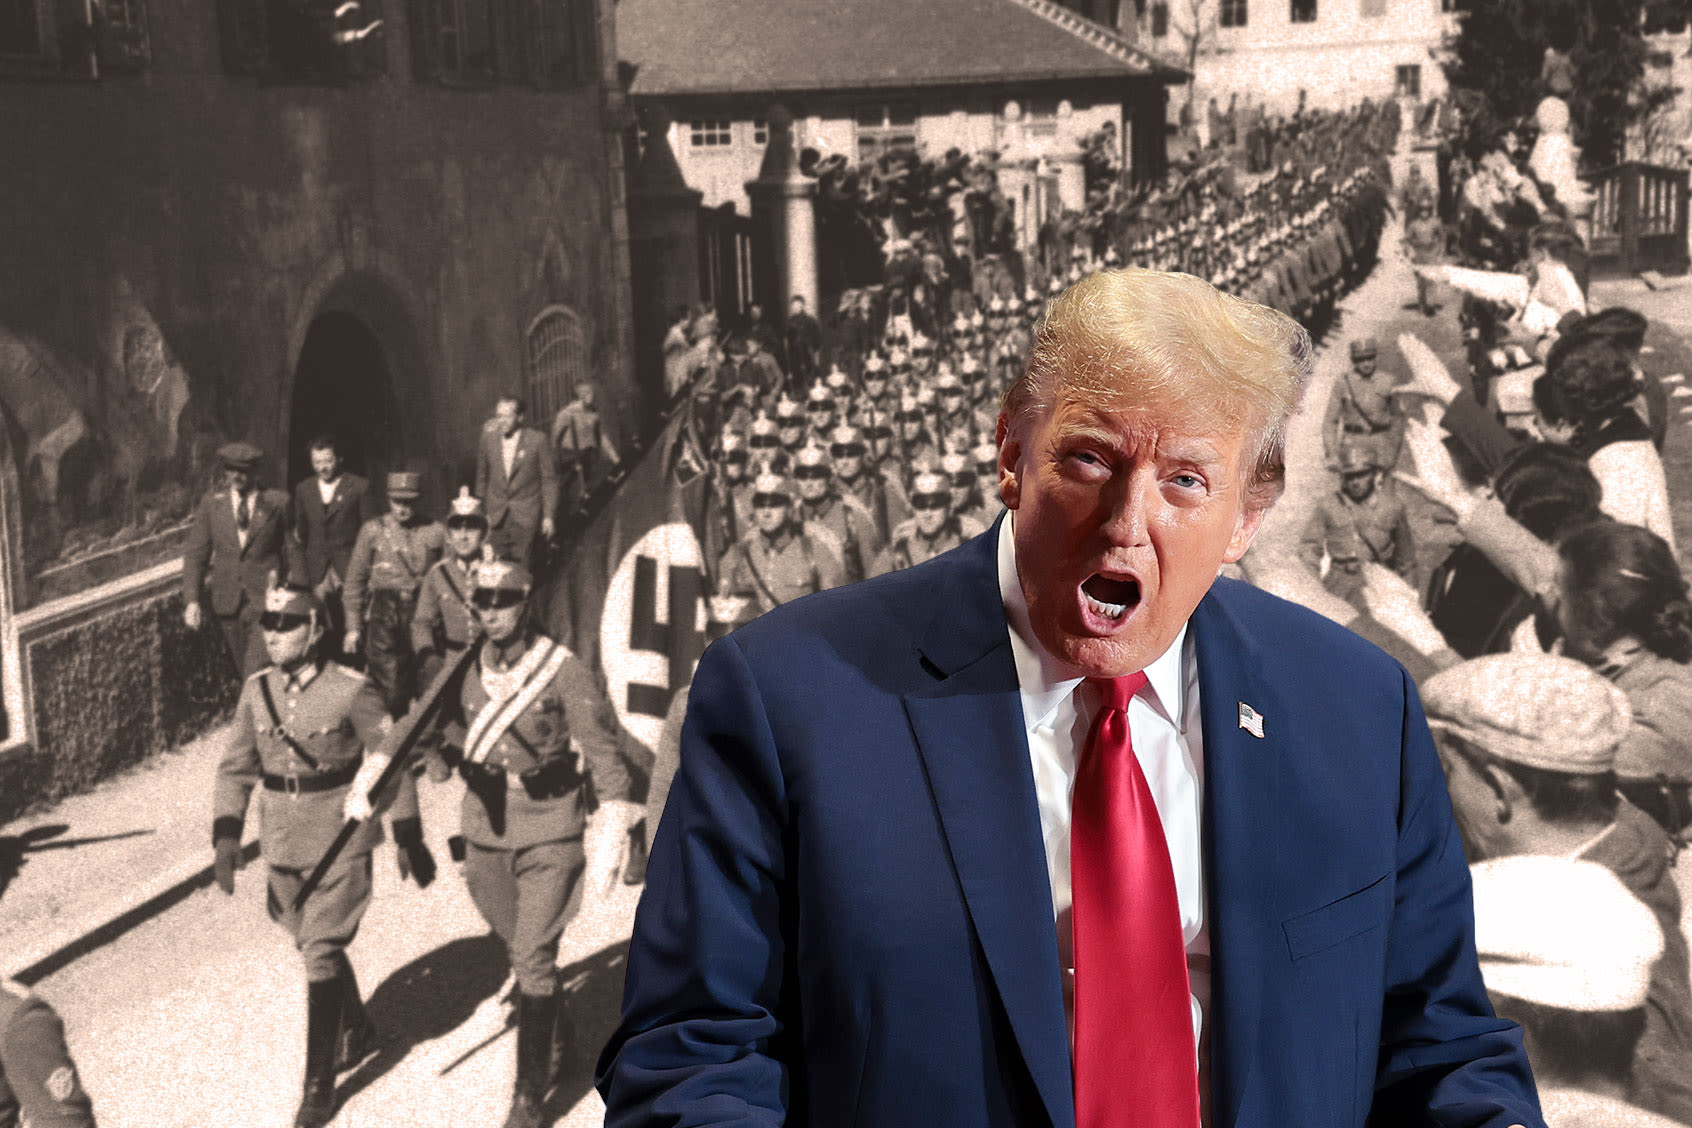 How Trump's hidden Nazi messages help conceal his open antisemitism